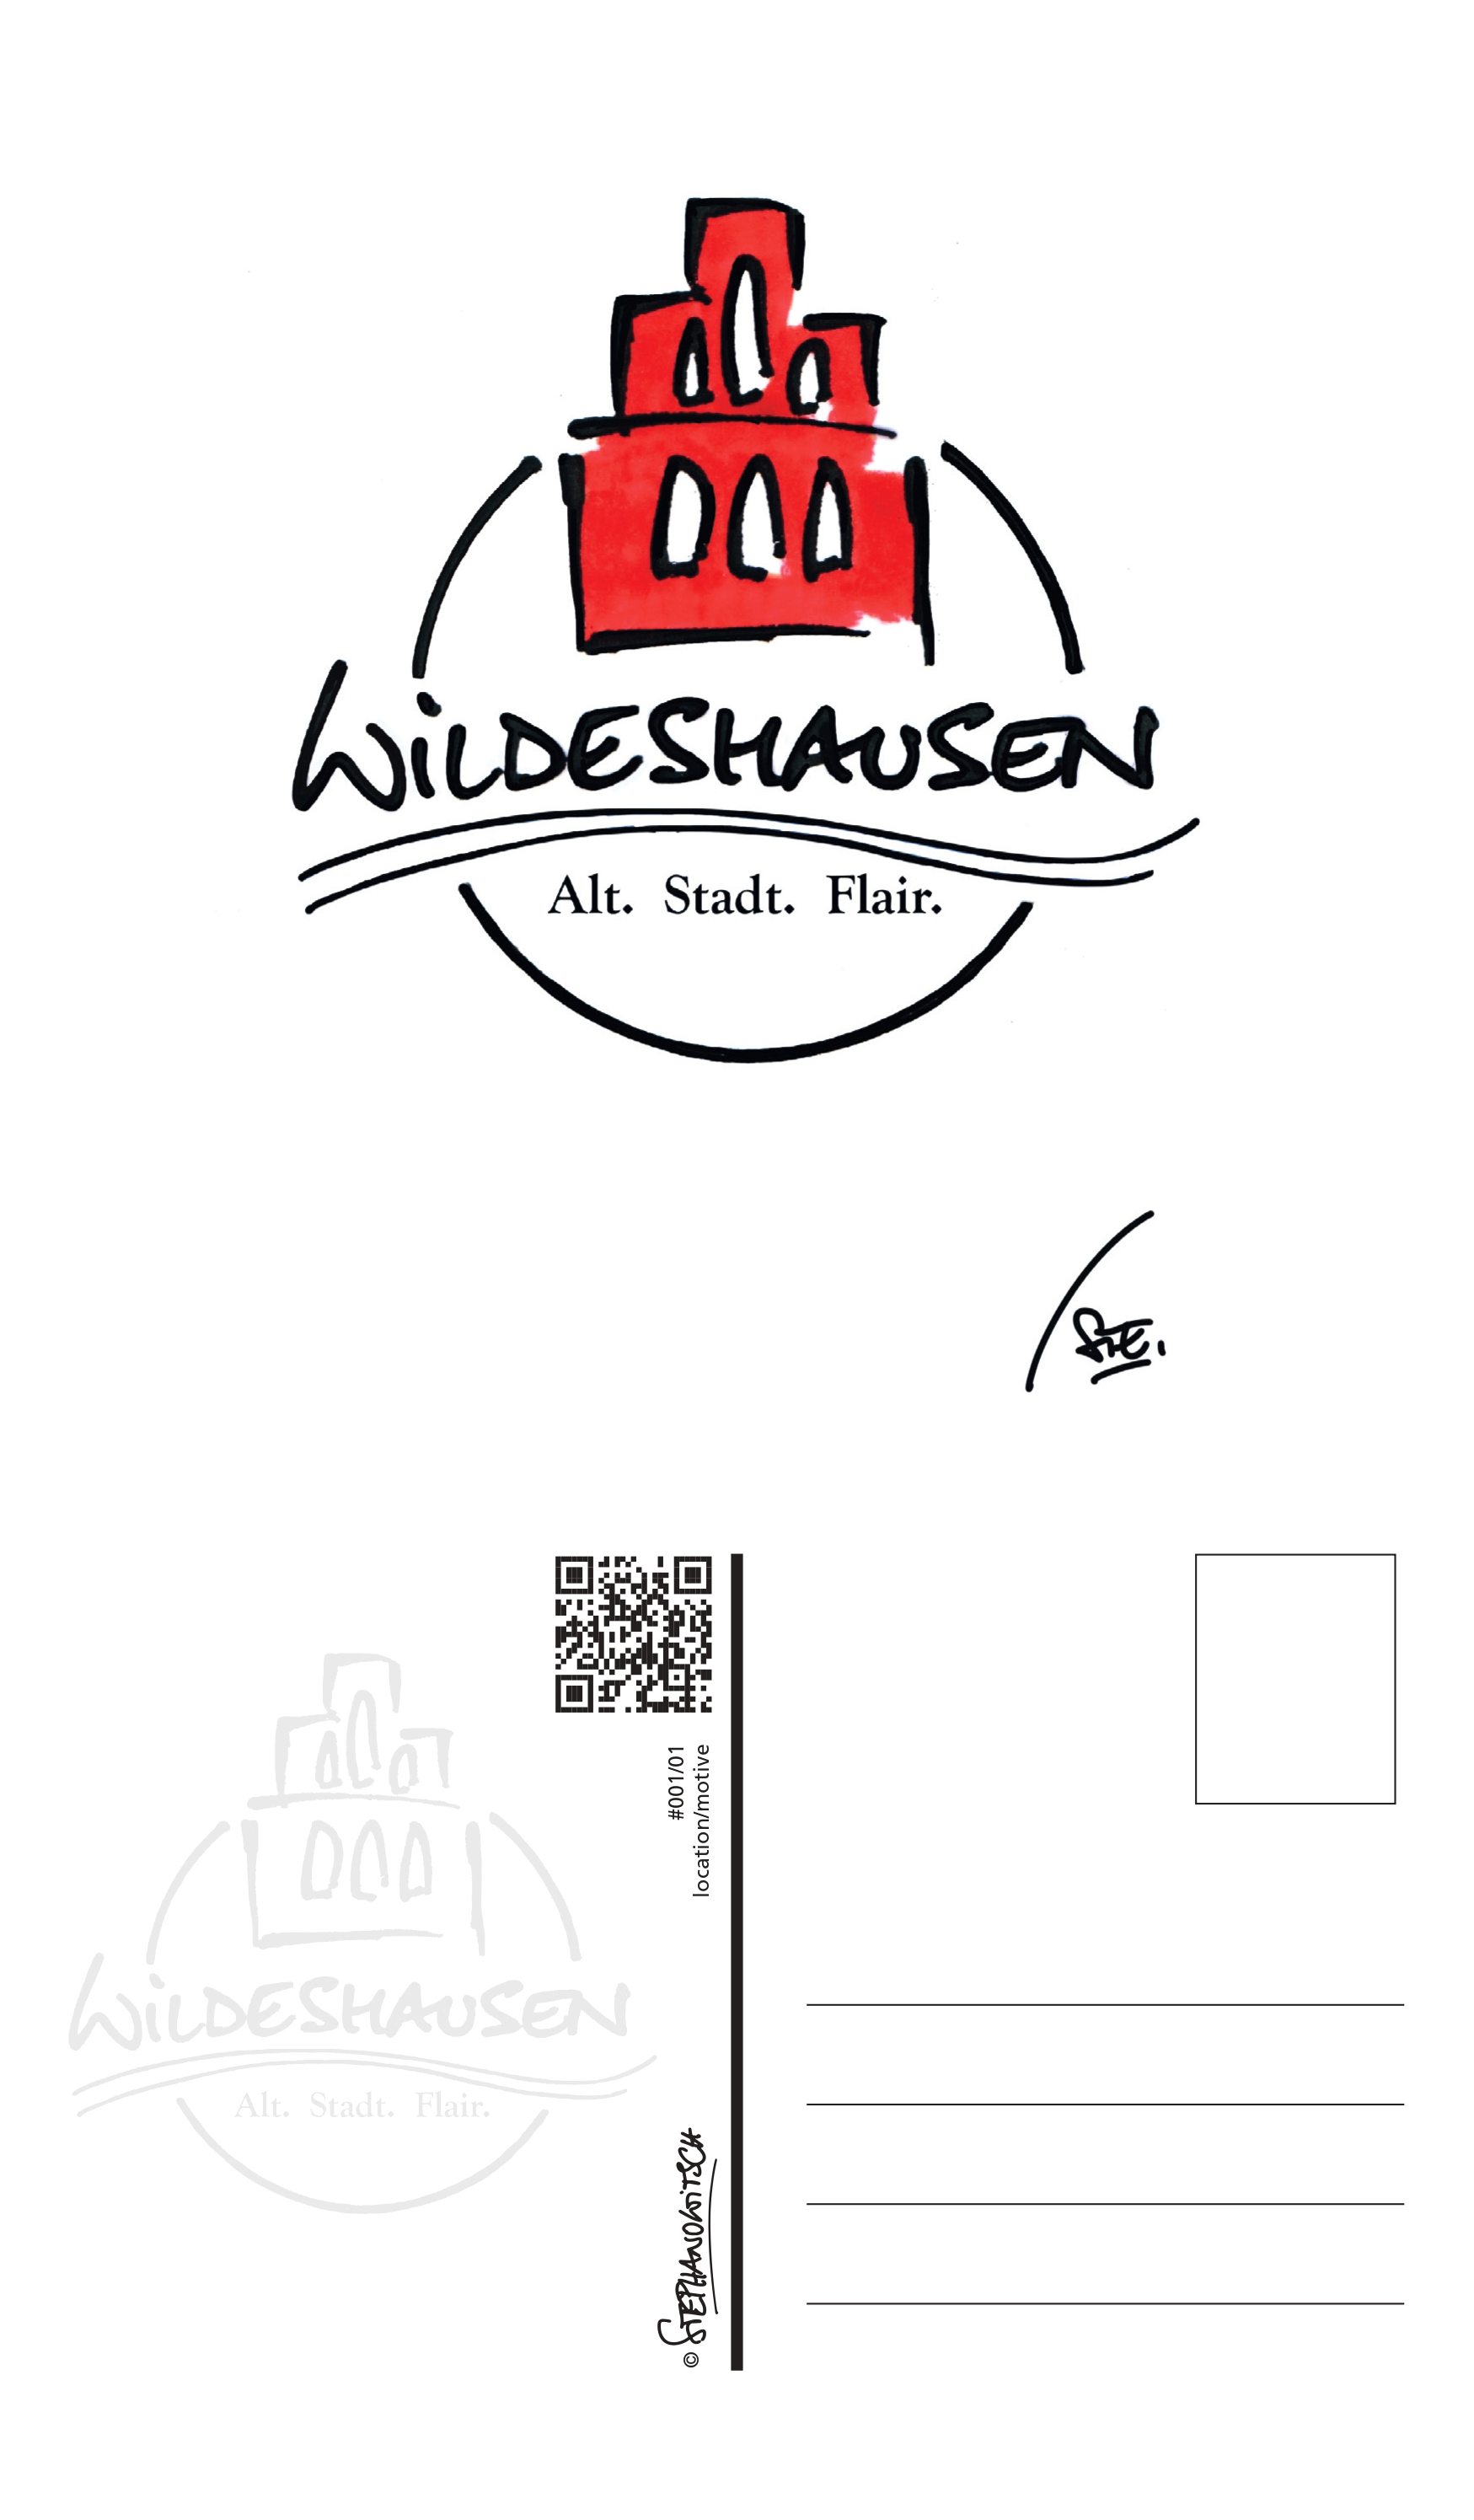 #001/01 Logo Wildeshausen